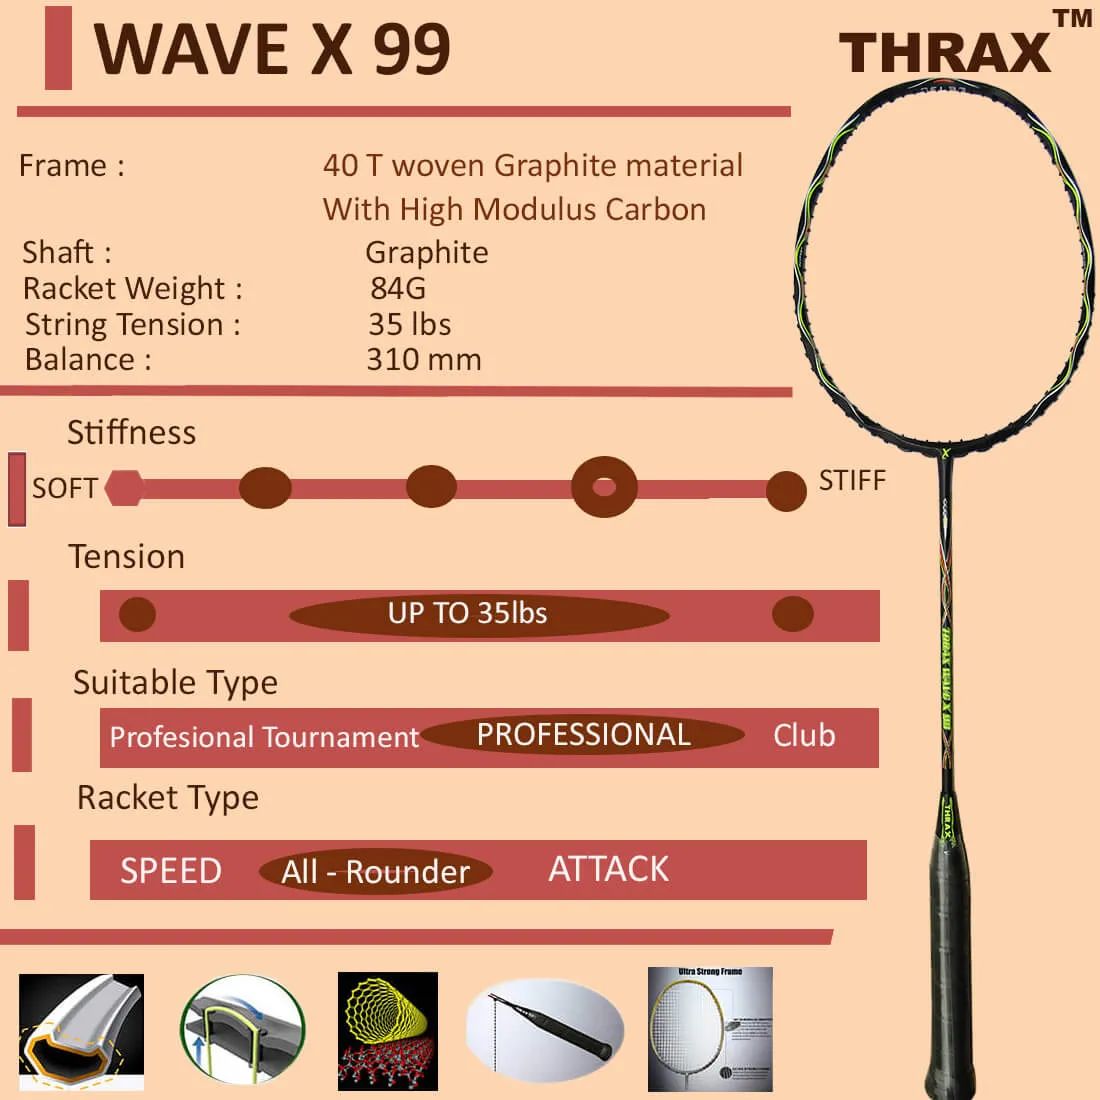 Thrax_Wave_X_99_Badminton_Racket_02